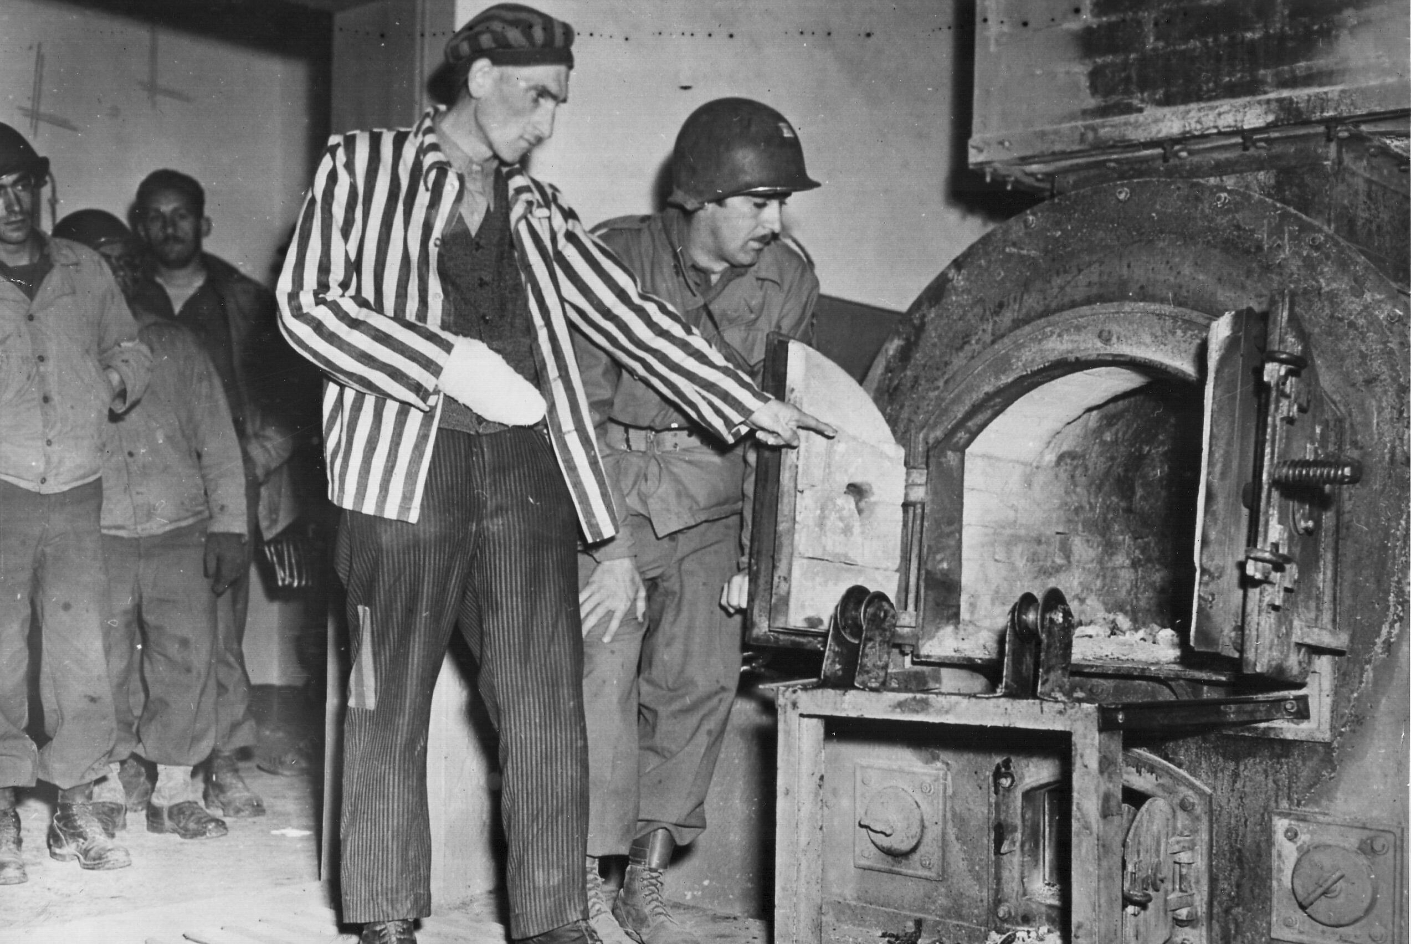 Im Zentrum des Bildes ist ein Mann in Häftlingskleidung, der neben einem US-Soldaten steht und in einen der Krematoriumsoefen zeigt. Im Hintergrund stehen weitere US-Soldaten und sehen durch einen Türbogen zu.